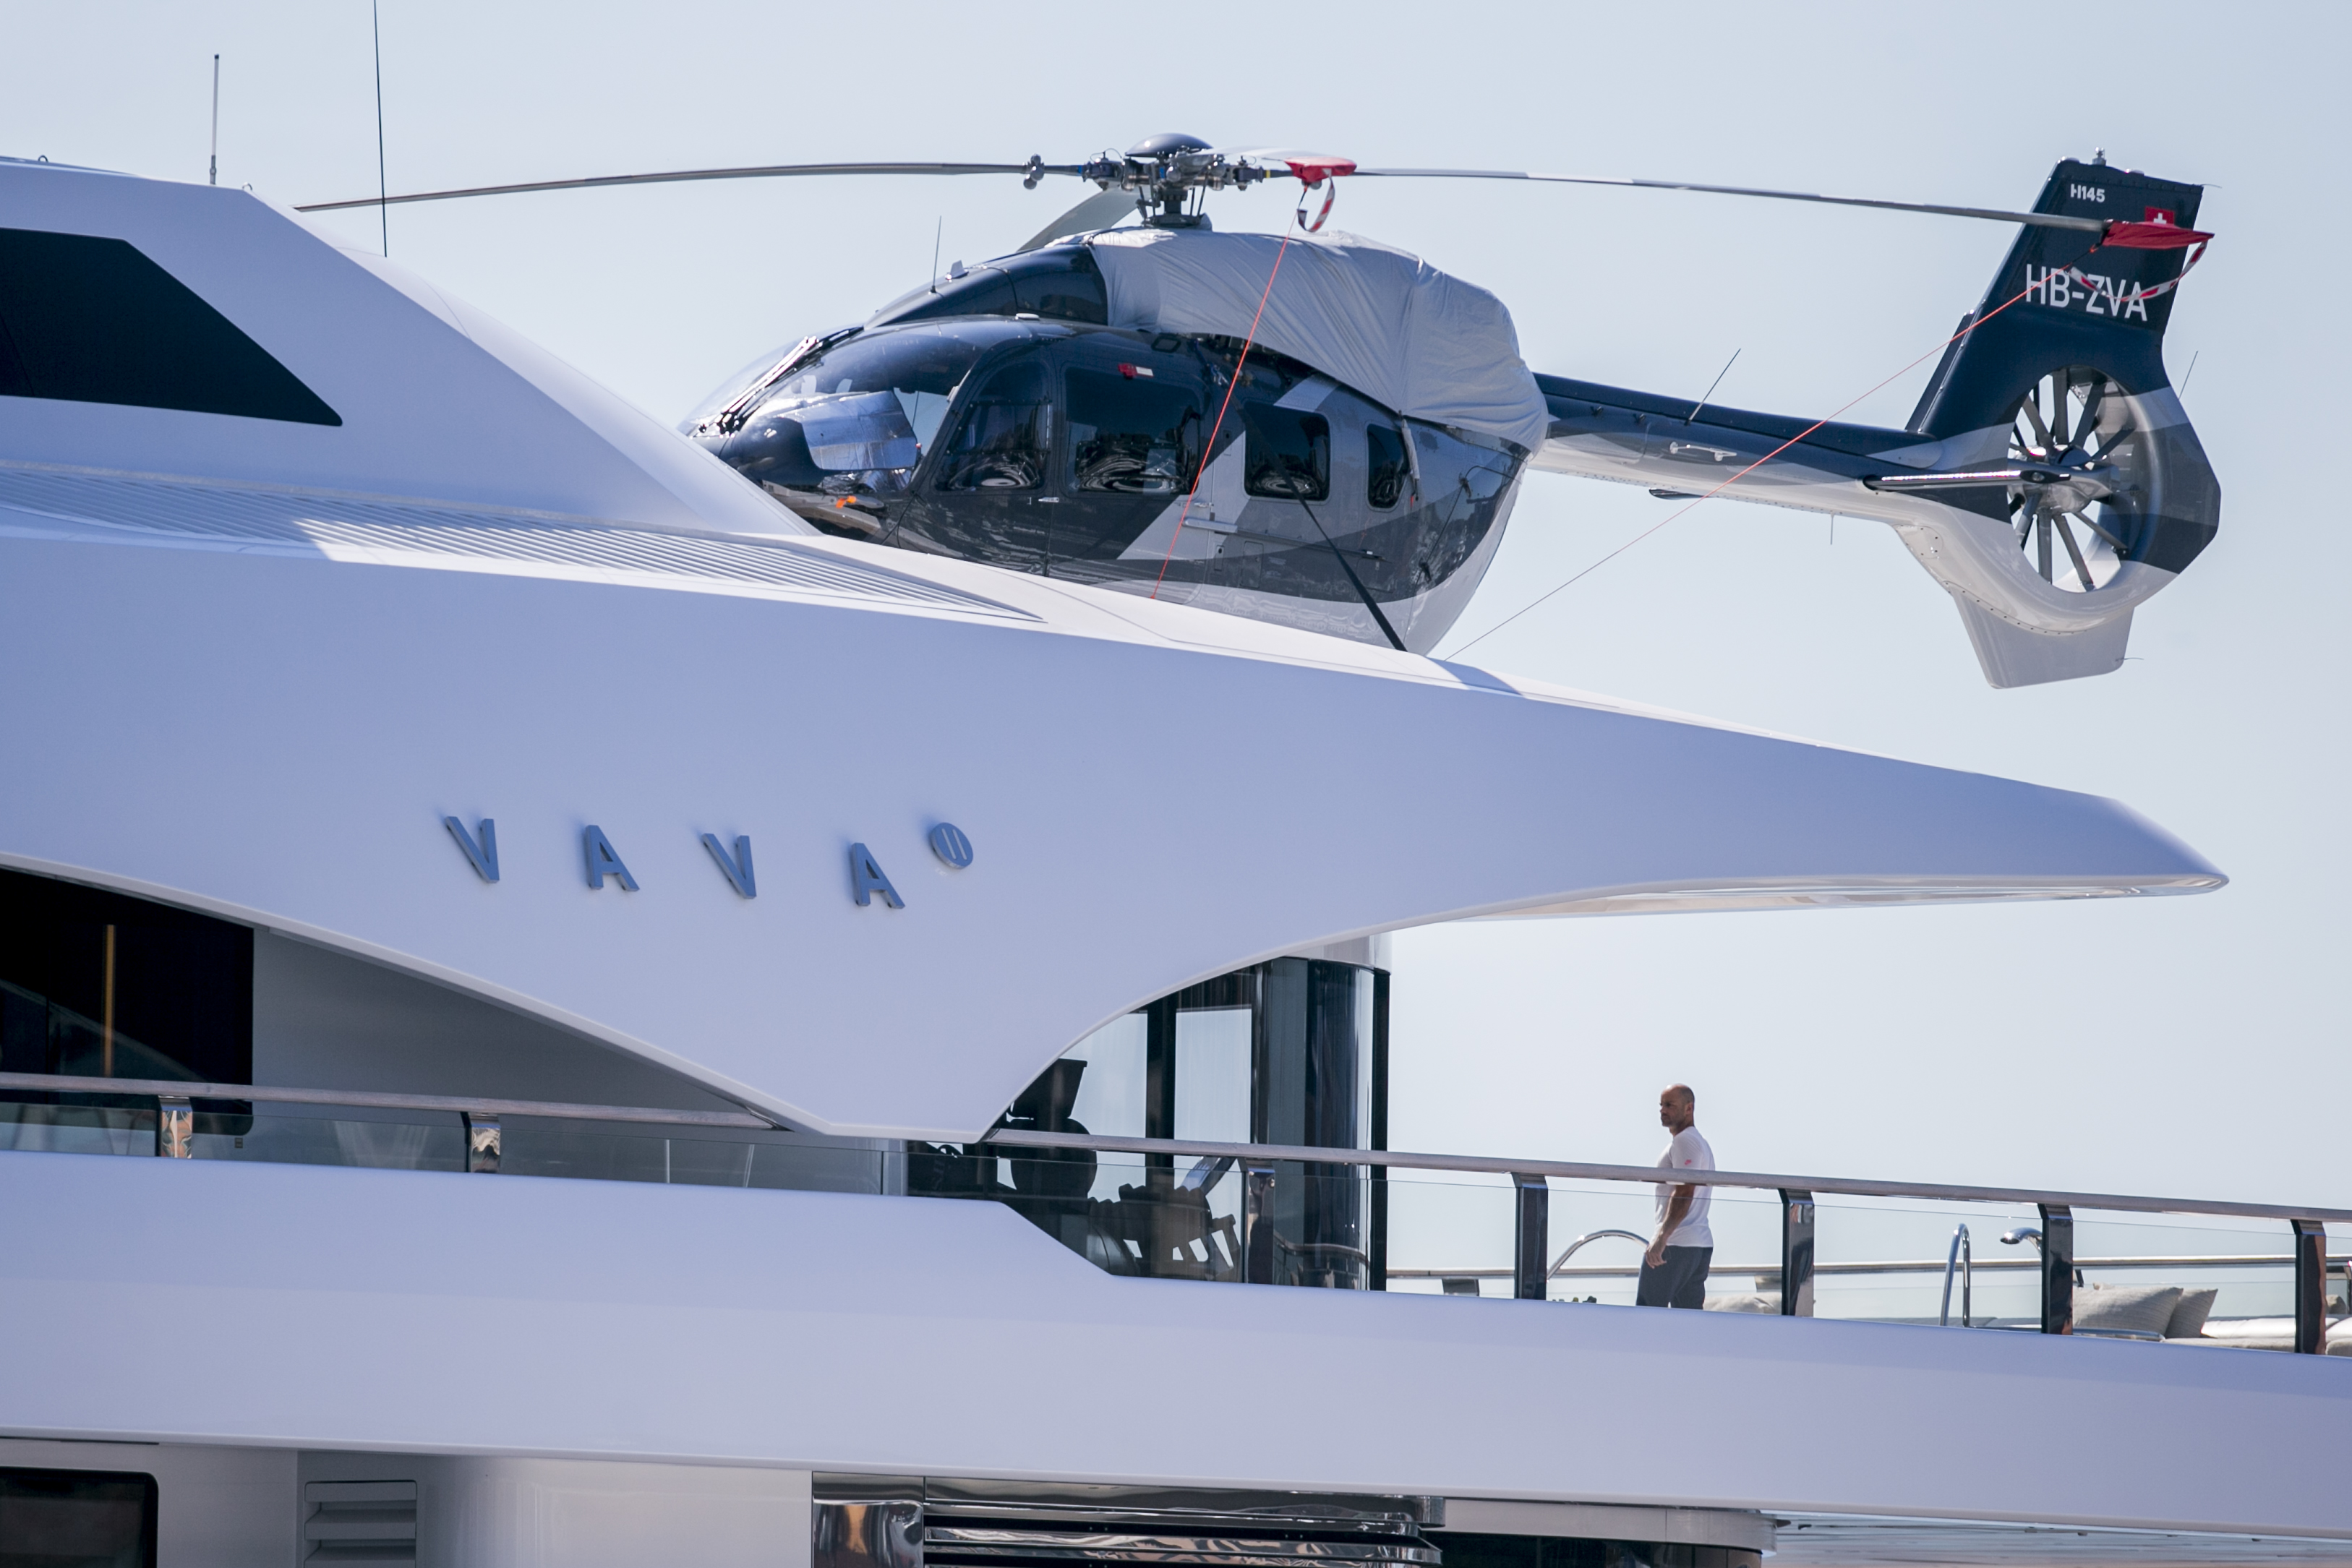 El barco tiene su propio helipuerto, completo con helicóptero.